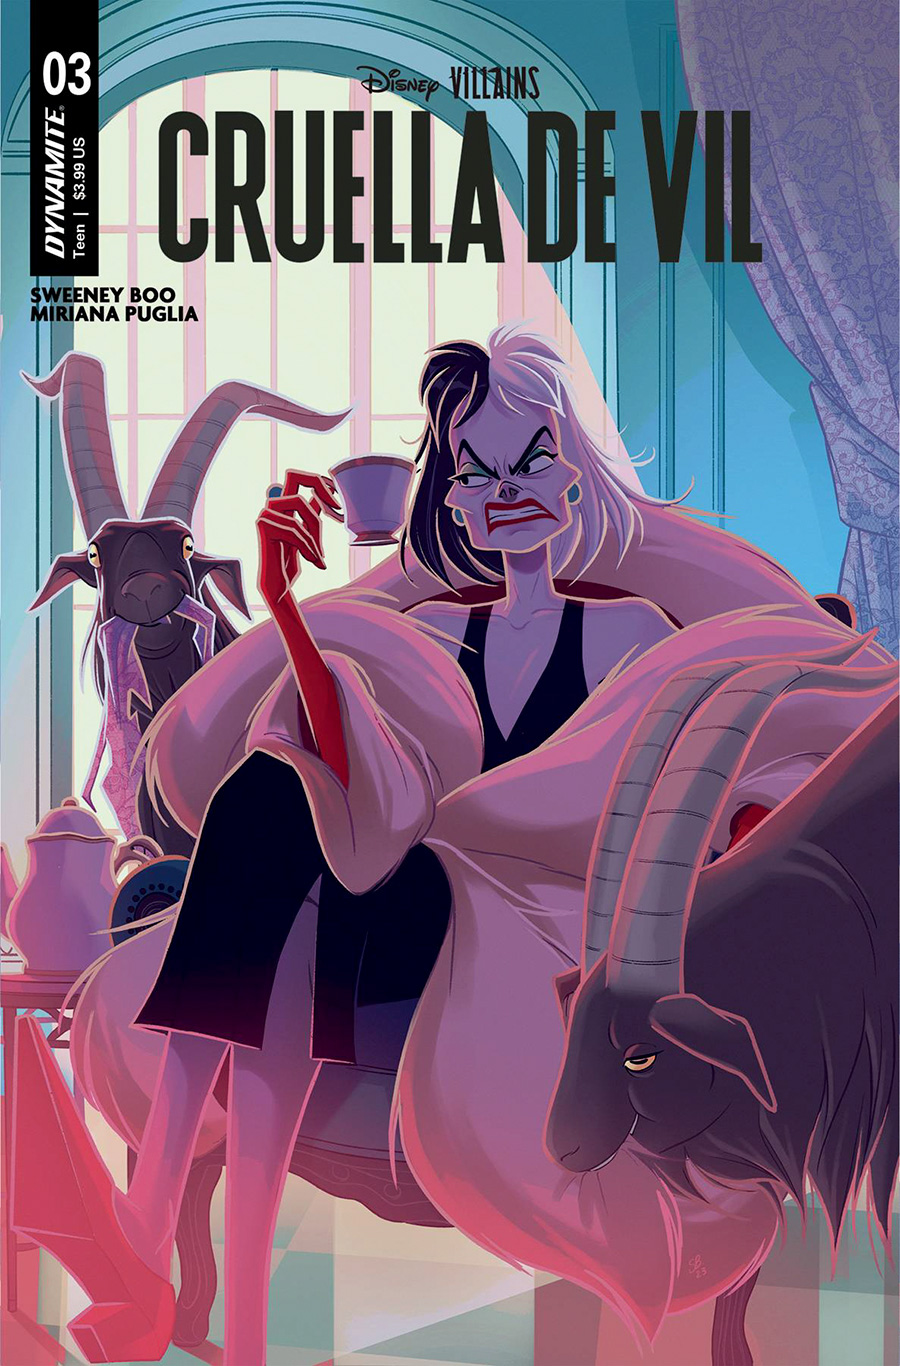 Disney Villains Cruella De Vil #3 Cover A Regular Sweeney Boo Cover